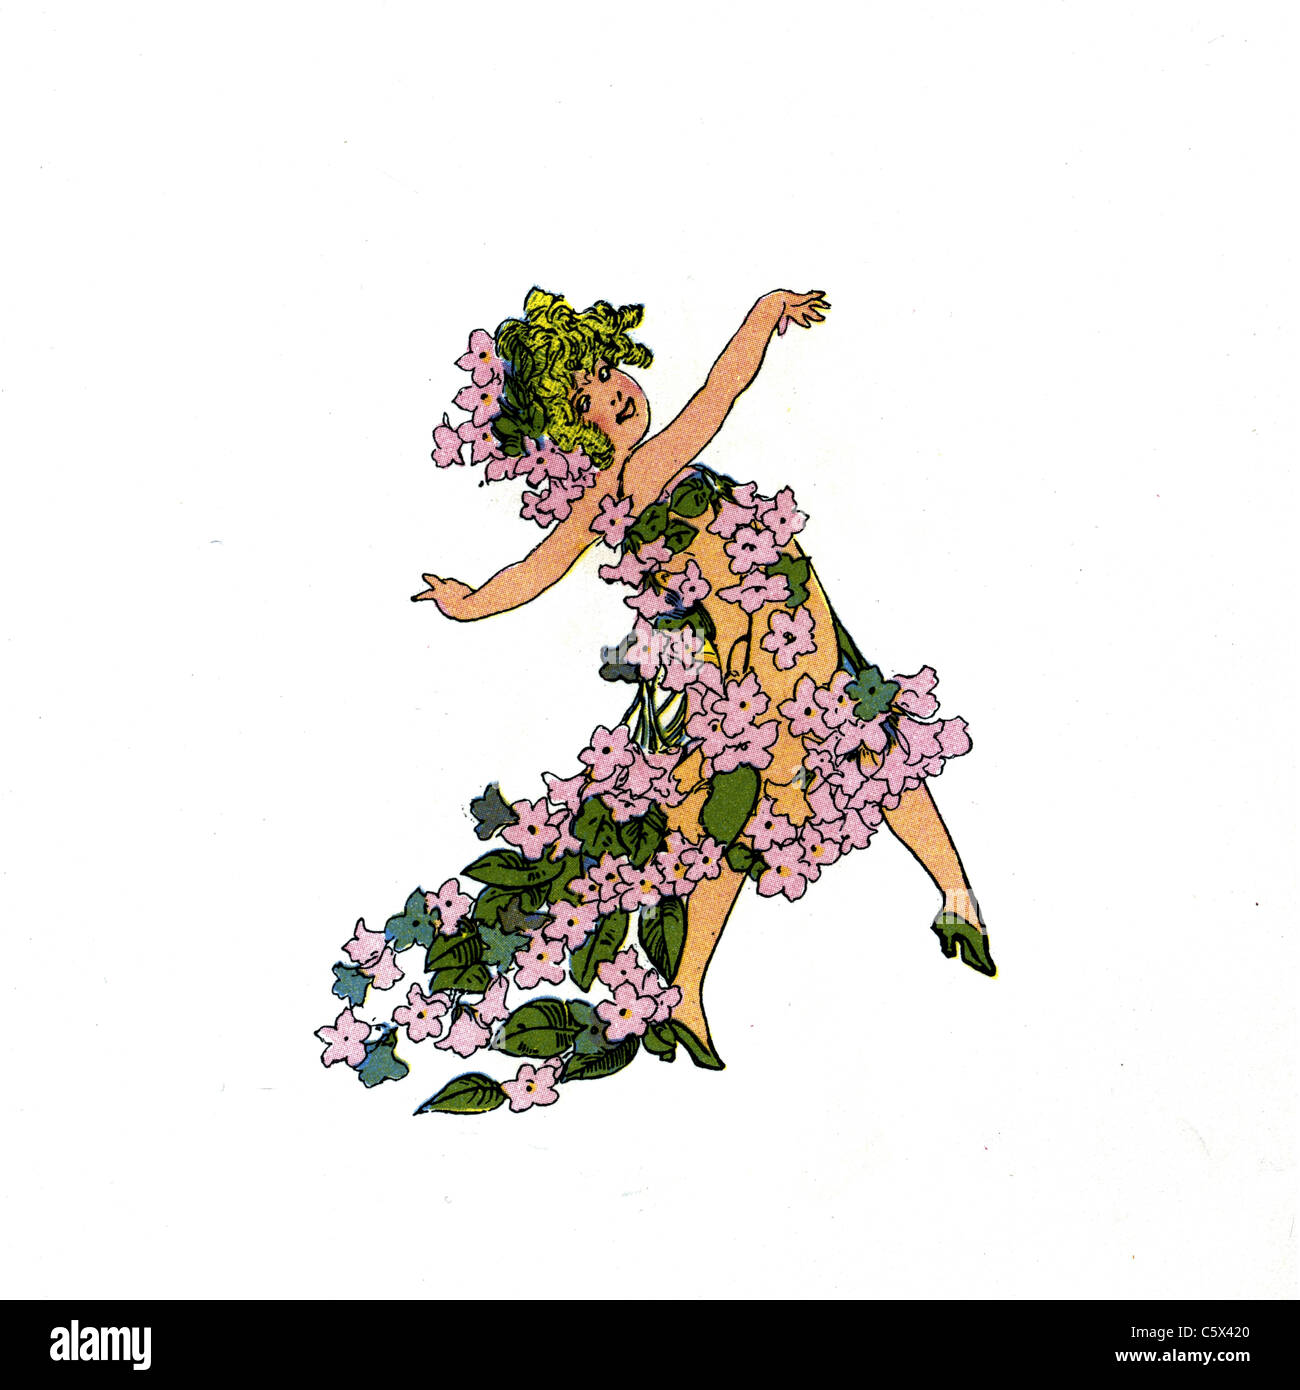 Les arbousiers - Flower Child Illustration d'un livre ancien Banque D'Images